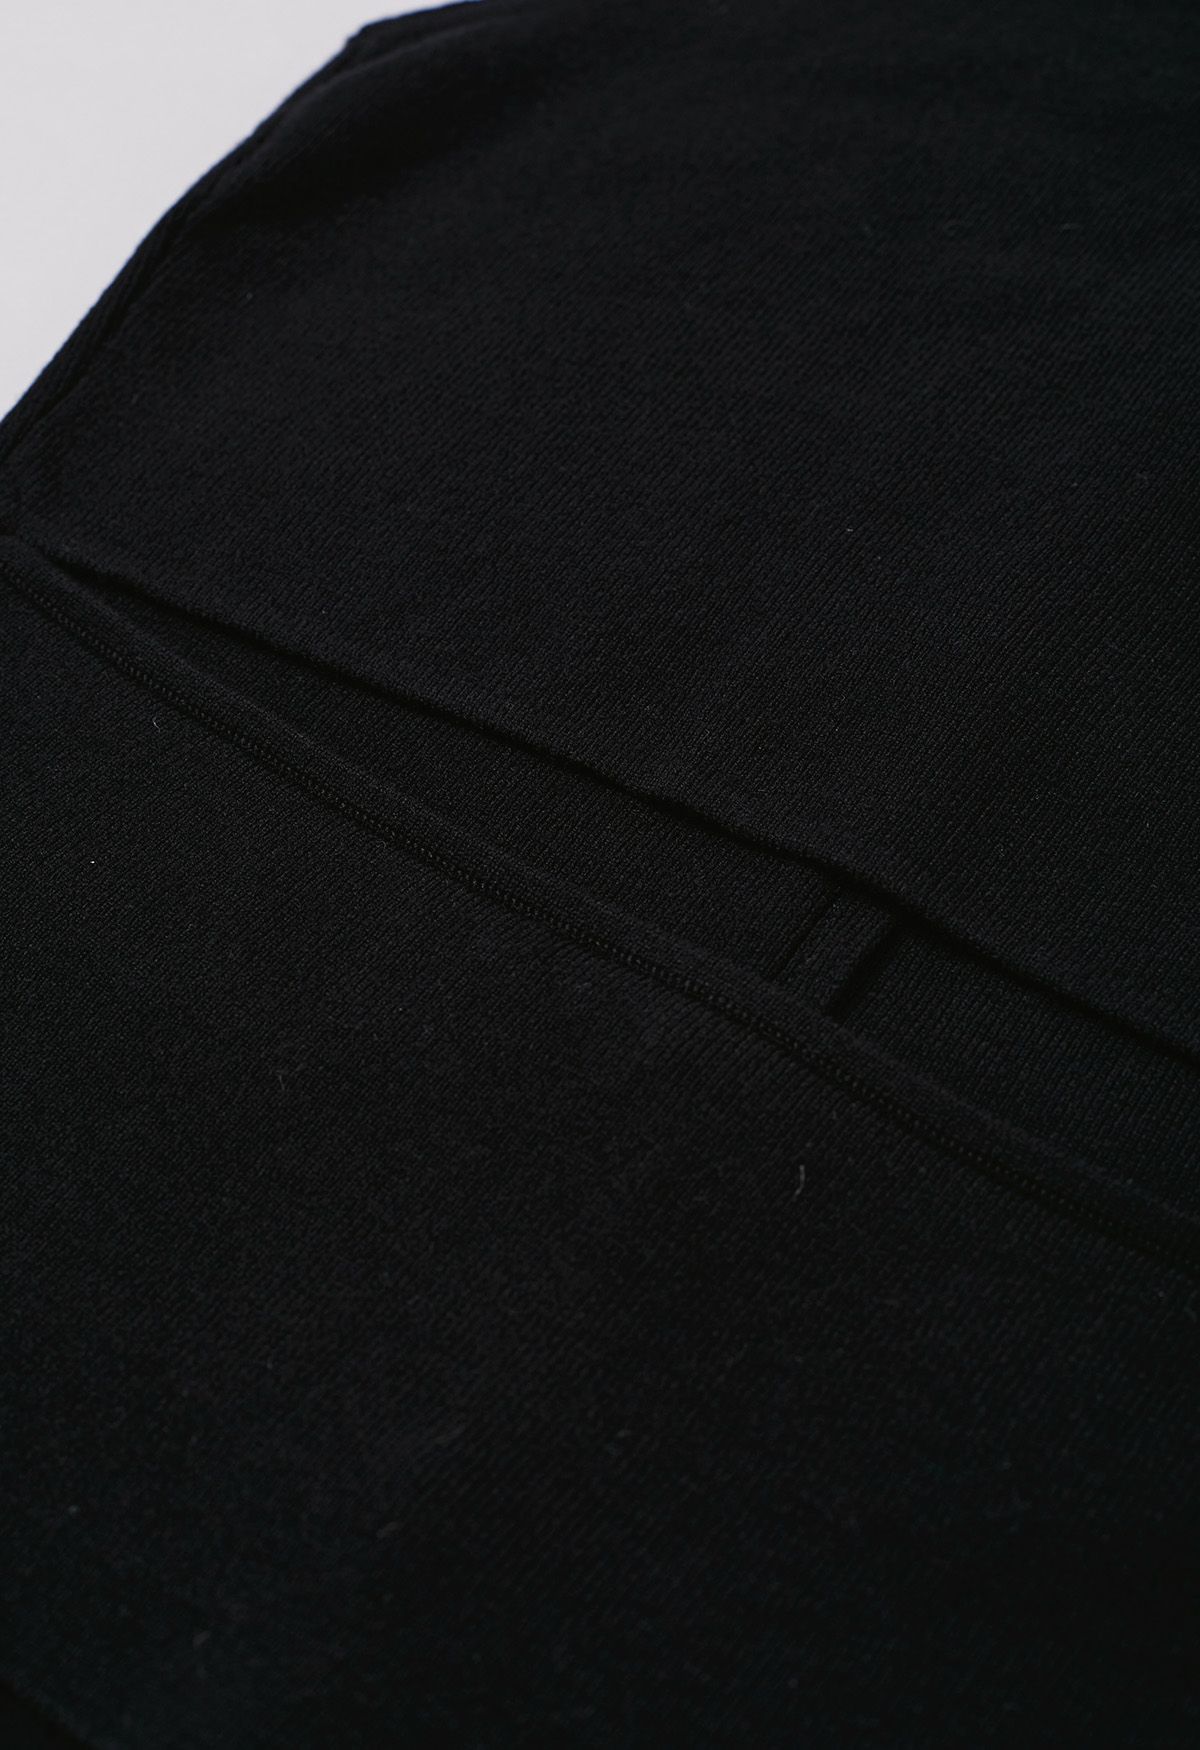 Haut en tricot sans manches boutonné au dos découpé en noir